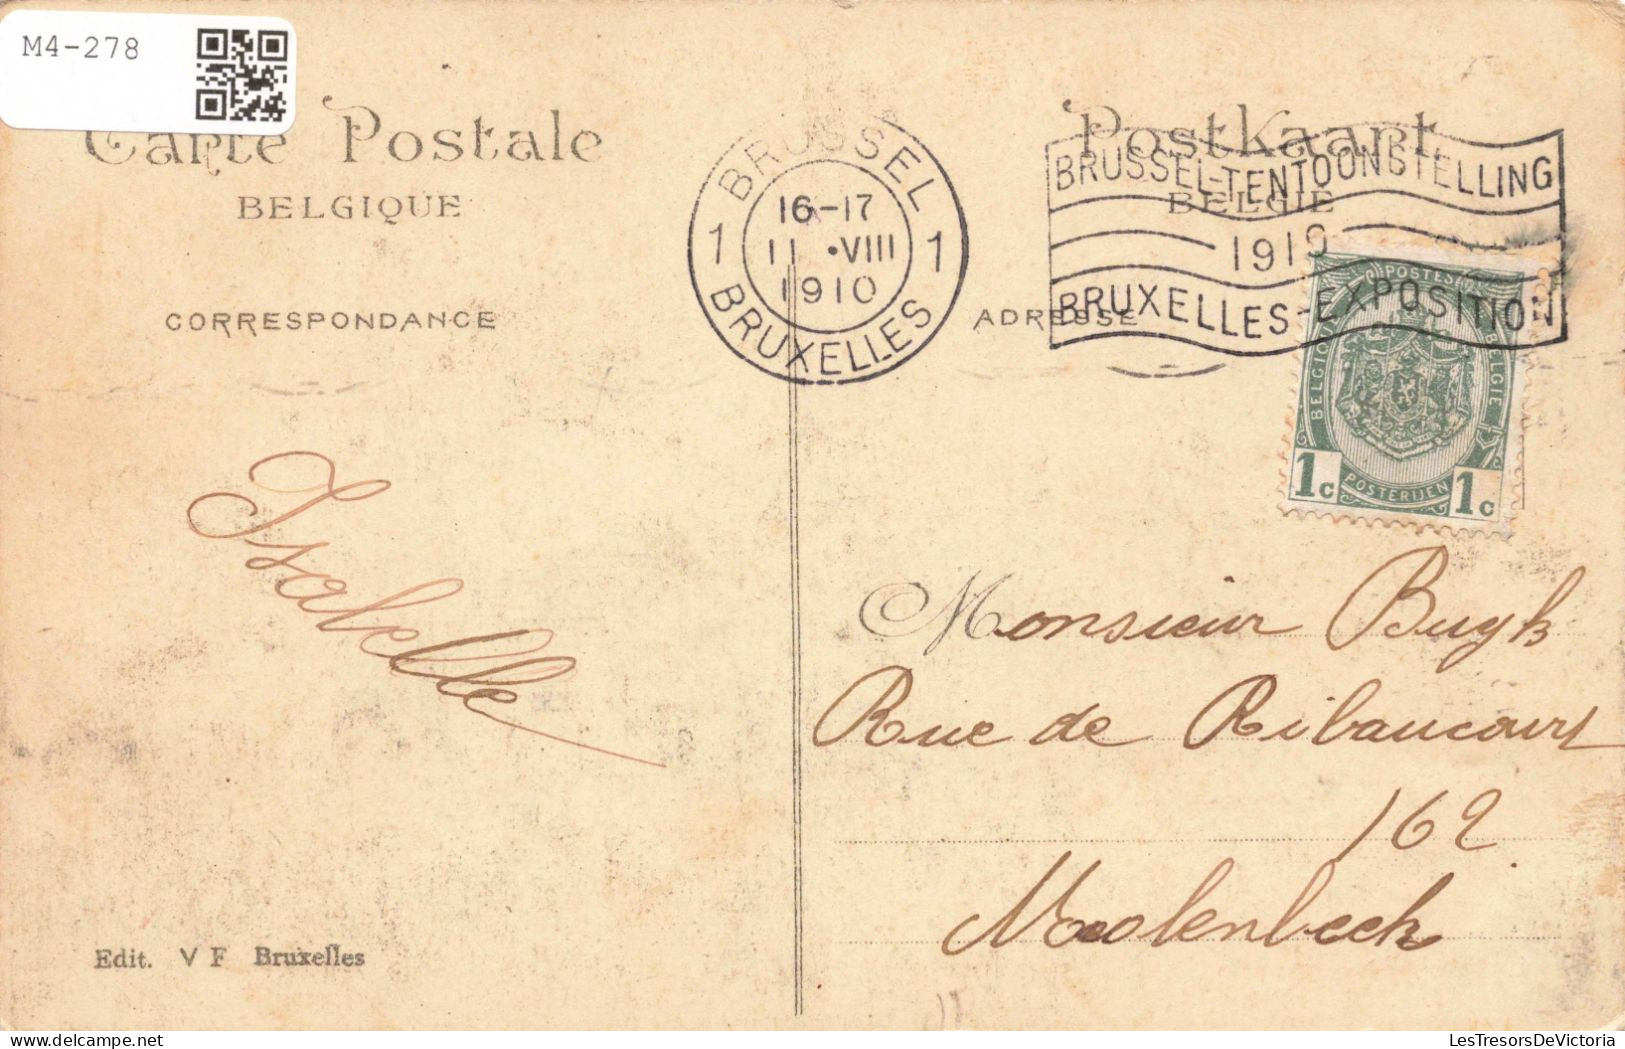 BELGIQUE - Bruxelles 1910 - Pavillon Du Brésil - Colorisé - Carte Postale Ancienne - Wereldtentoonstellingen